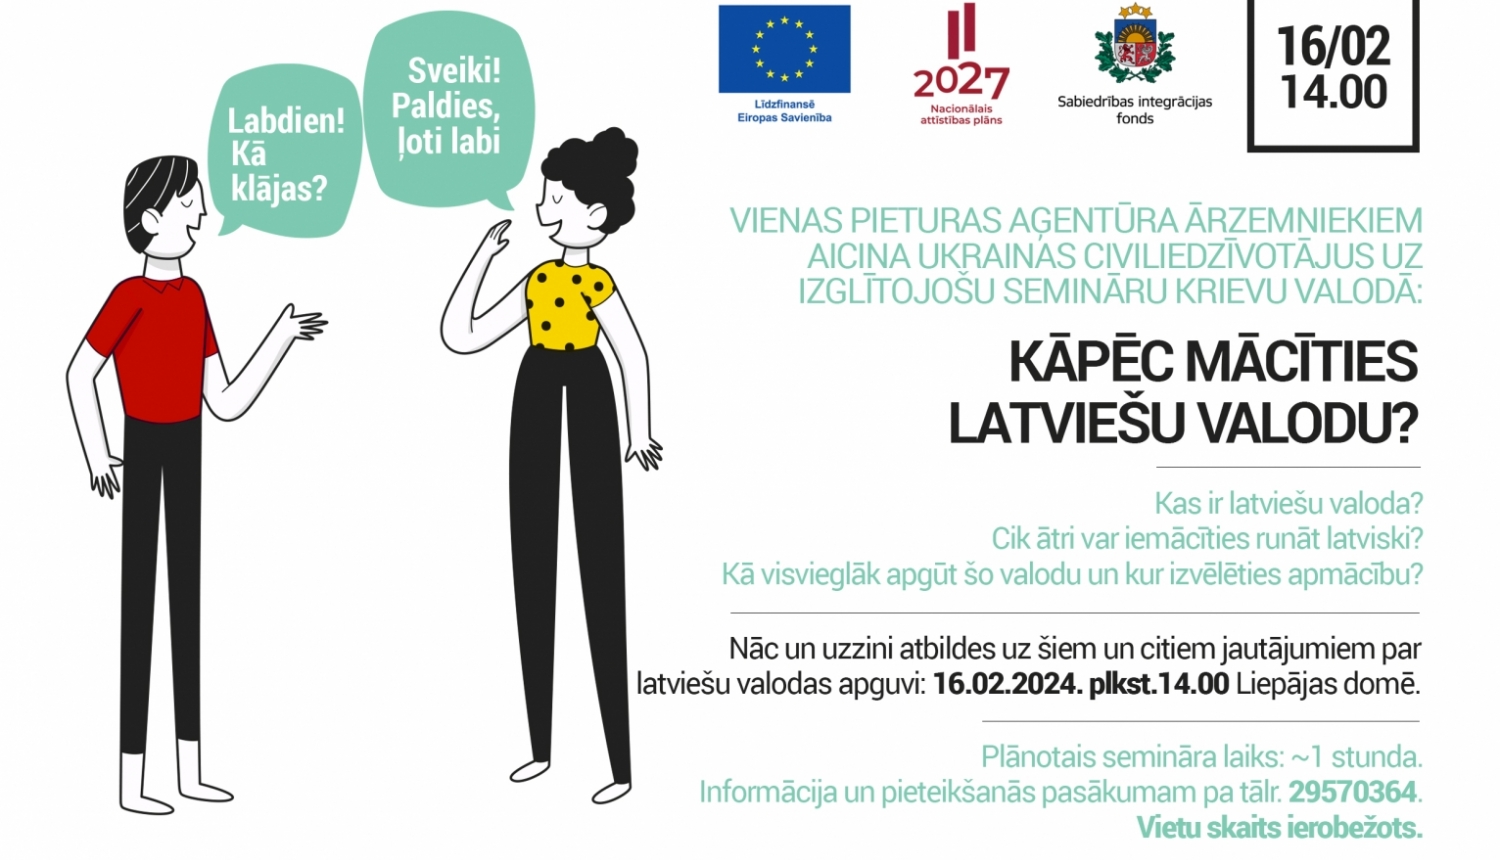 Vienas pieturas aģentūra rīko izglītojošu semināru Ukrainas civiliedzīvotājiem - “Kāpēc mācīties latviešu valodu?”